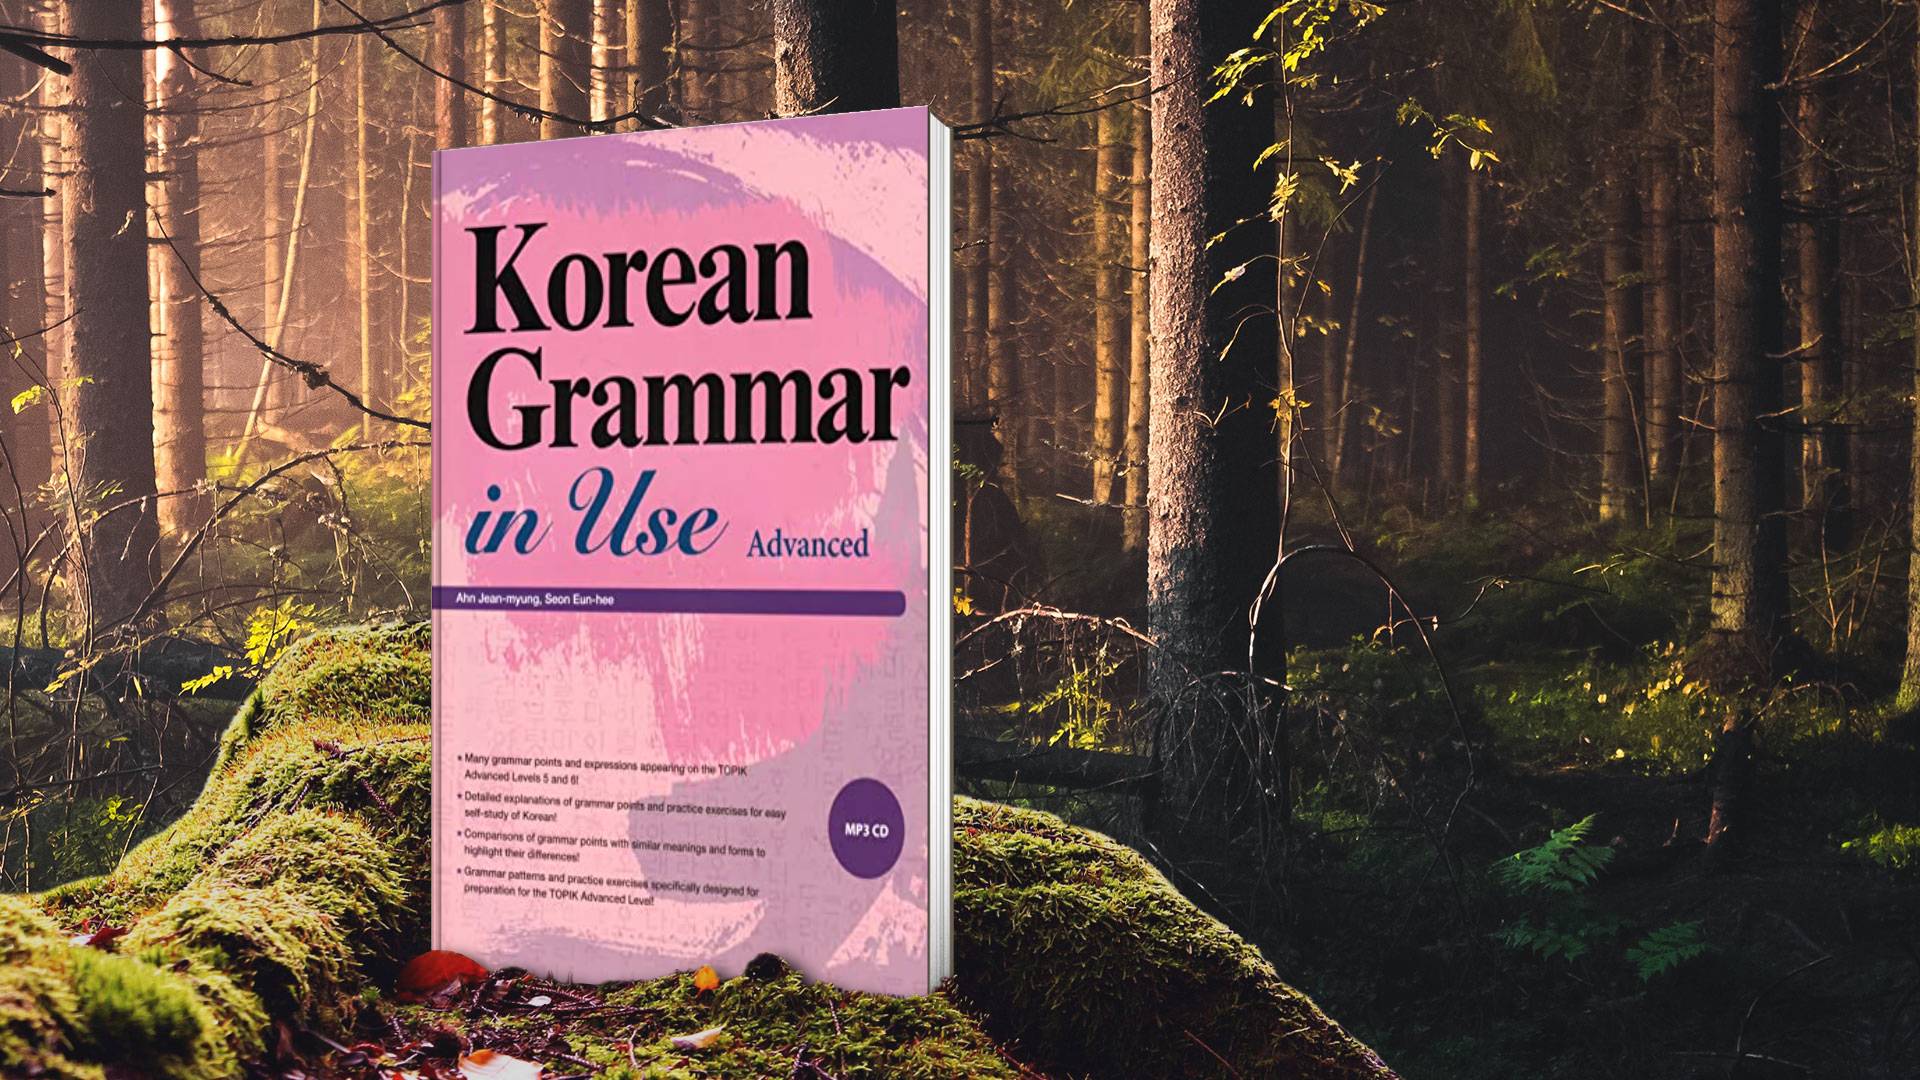 خرید کتاب زبان کره ای | کتاب زبان کره ای | Korean Grammar in Use Advanced | کره ای کرین گرامر این یوز ادونس